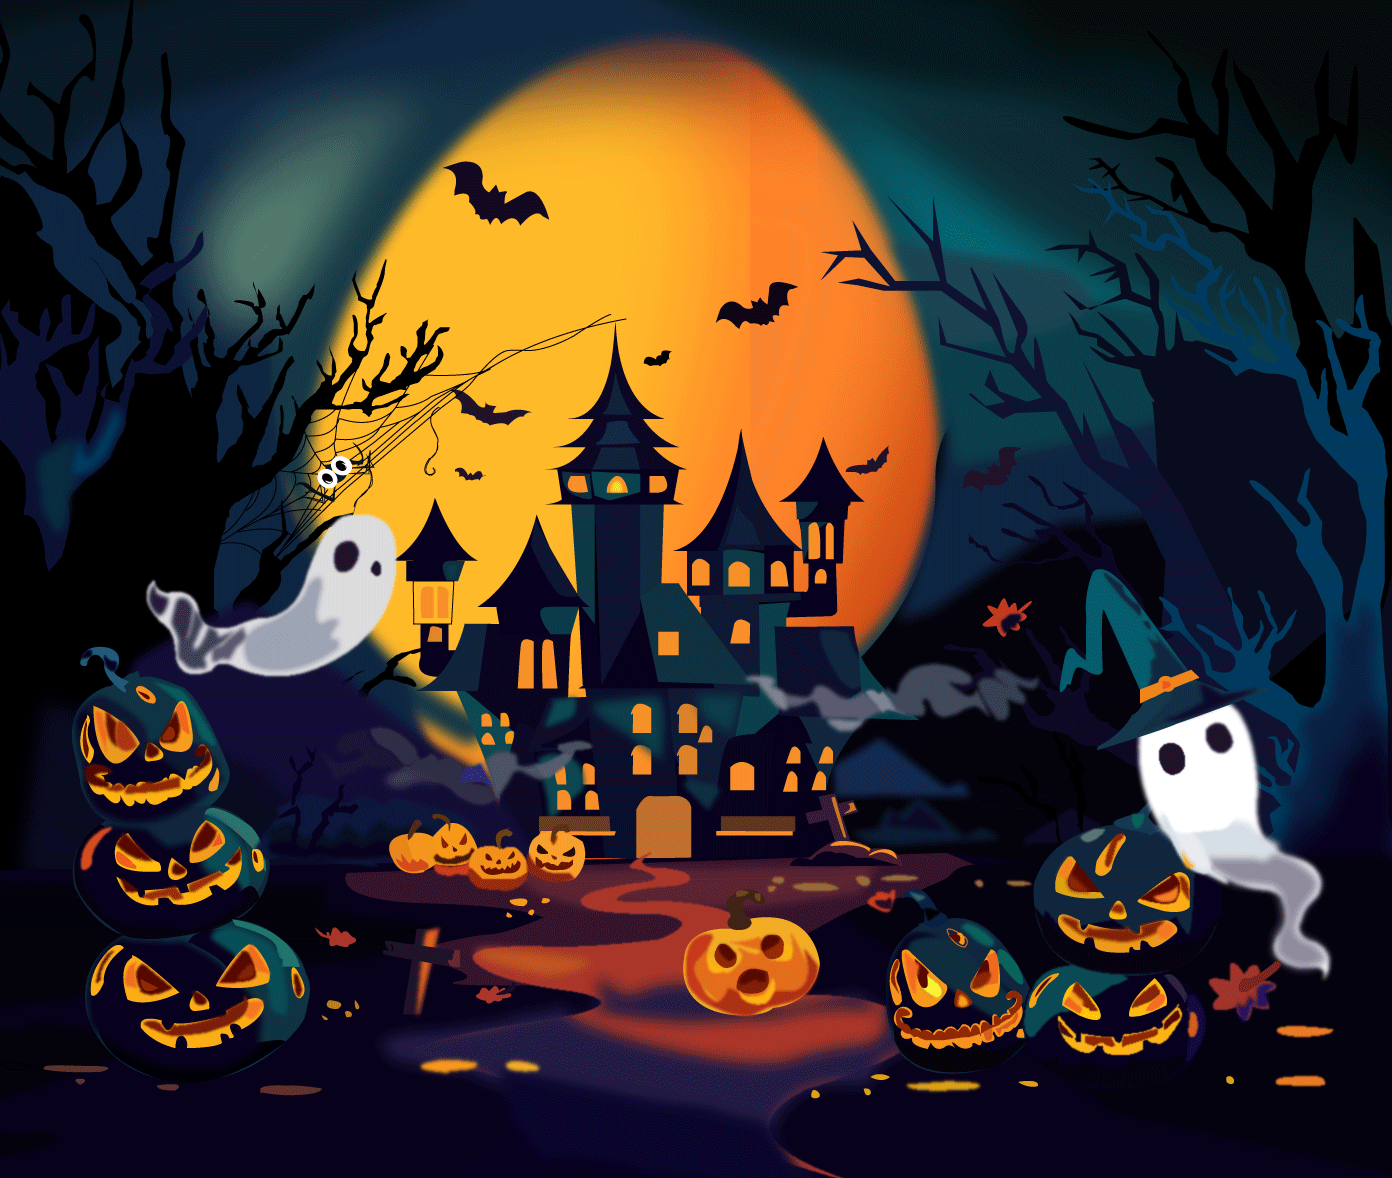 Creepy Halloween by Eugenio Herrera on Dribbble